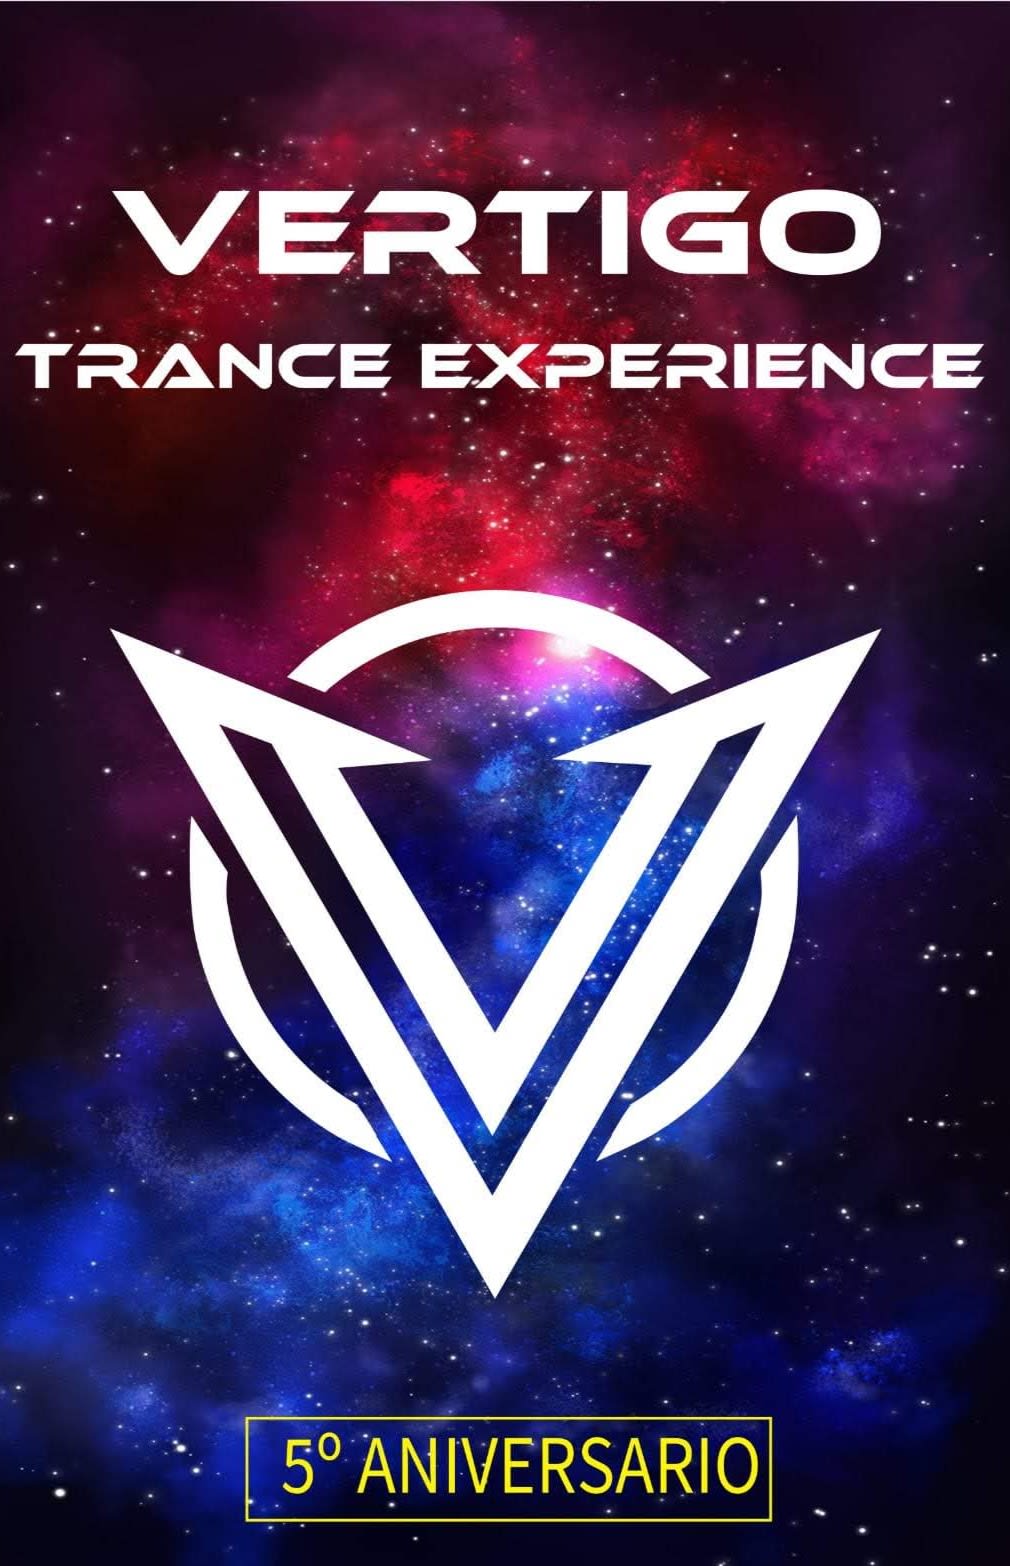 Vértigo Trance Experience